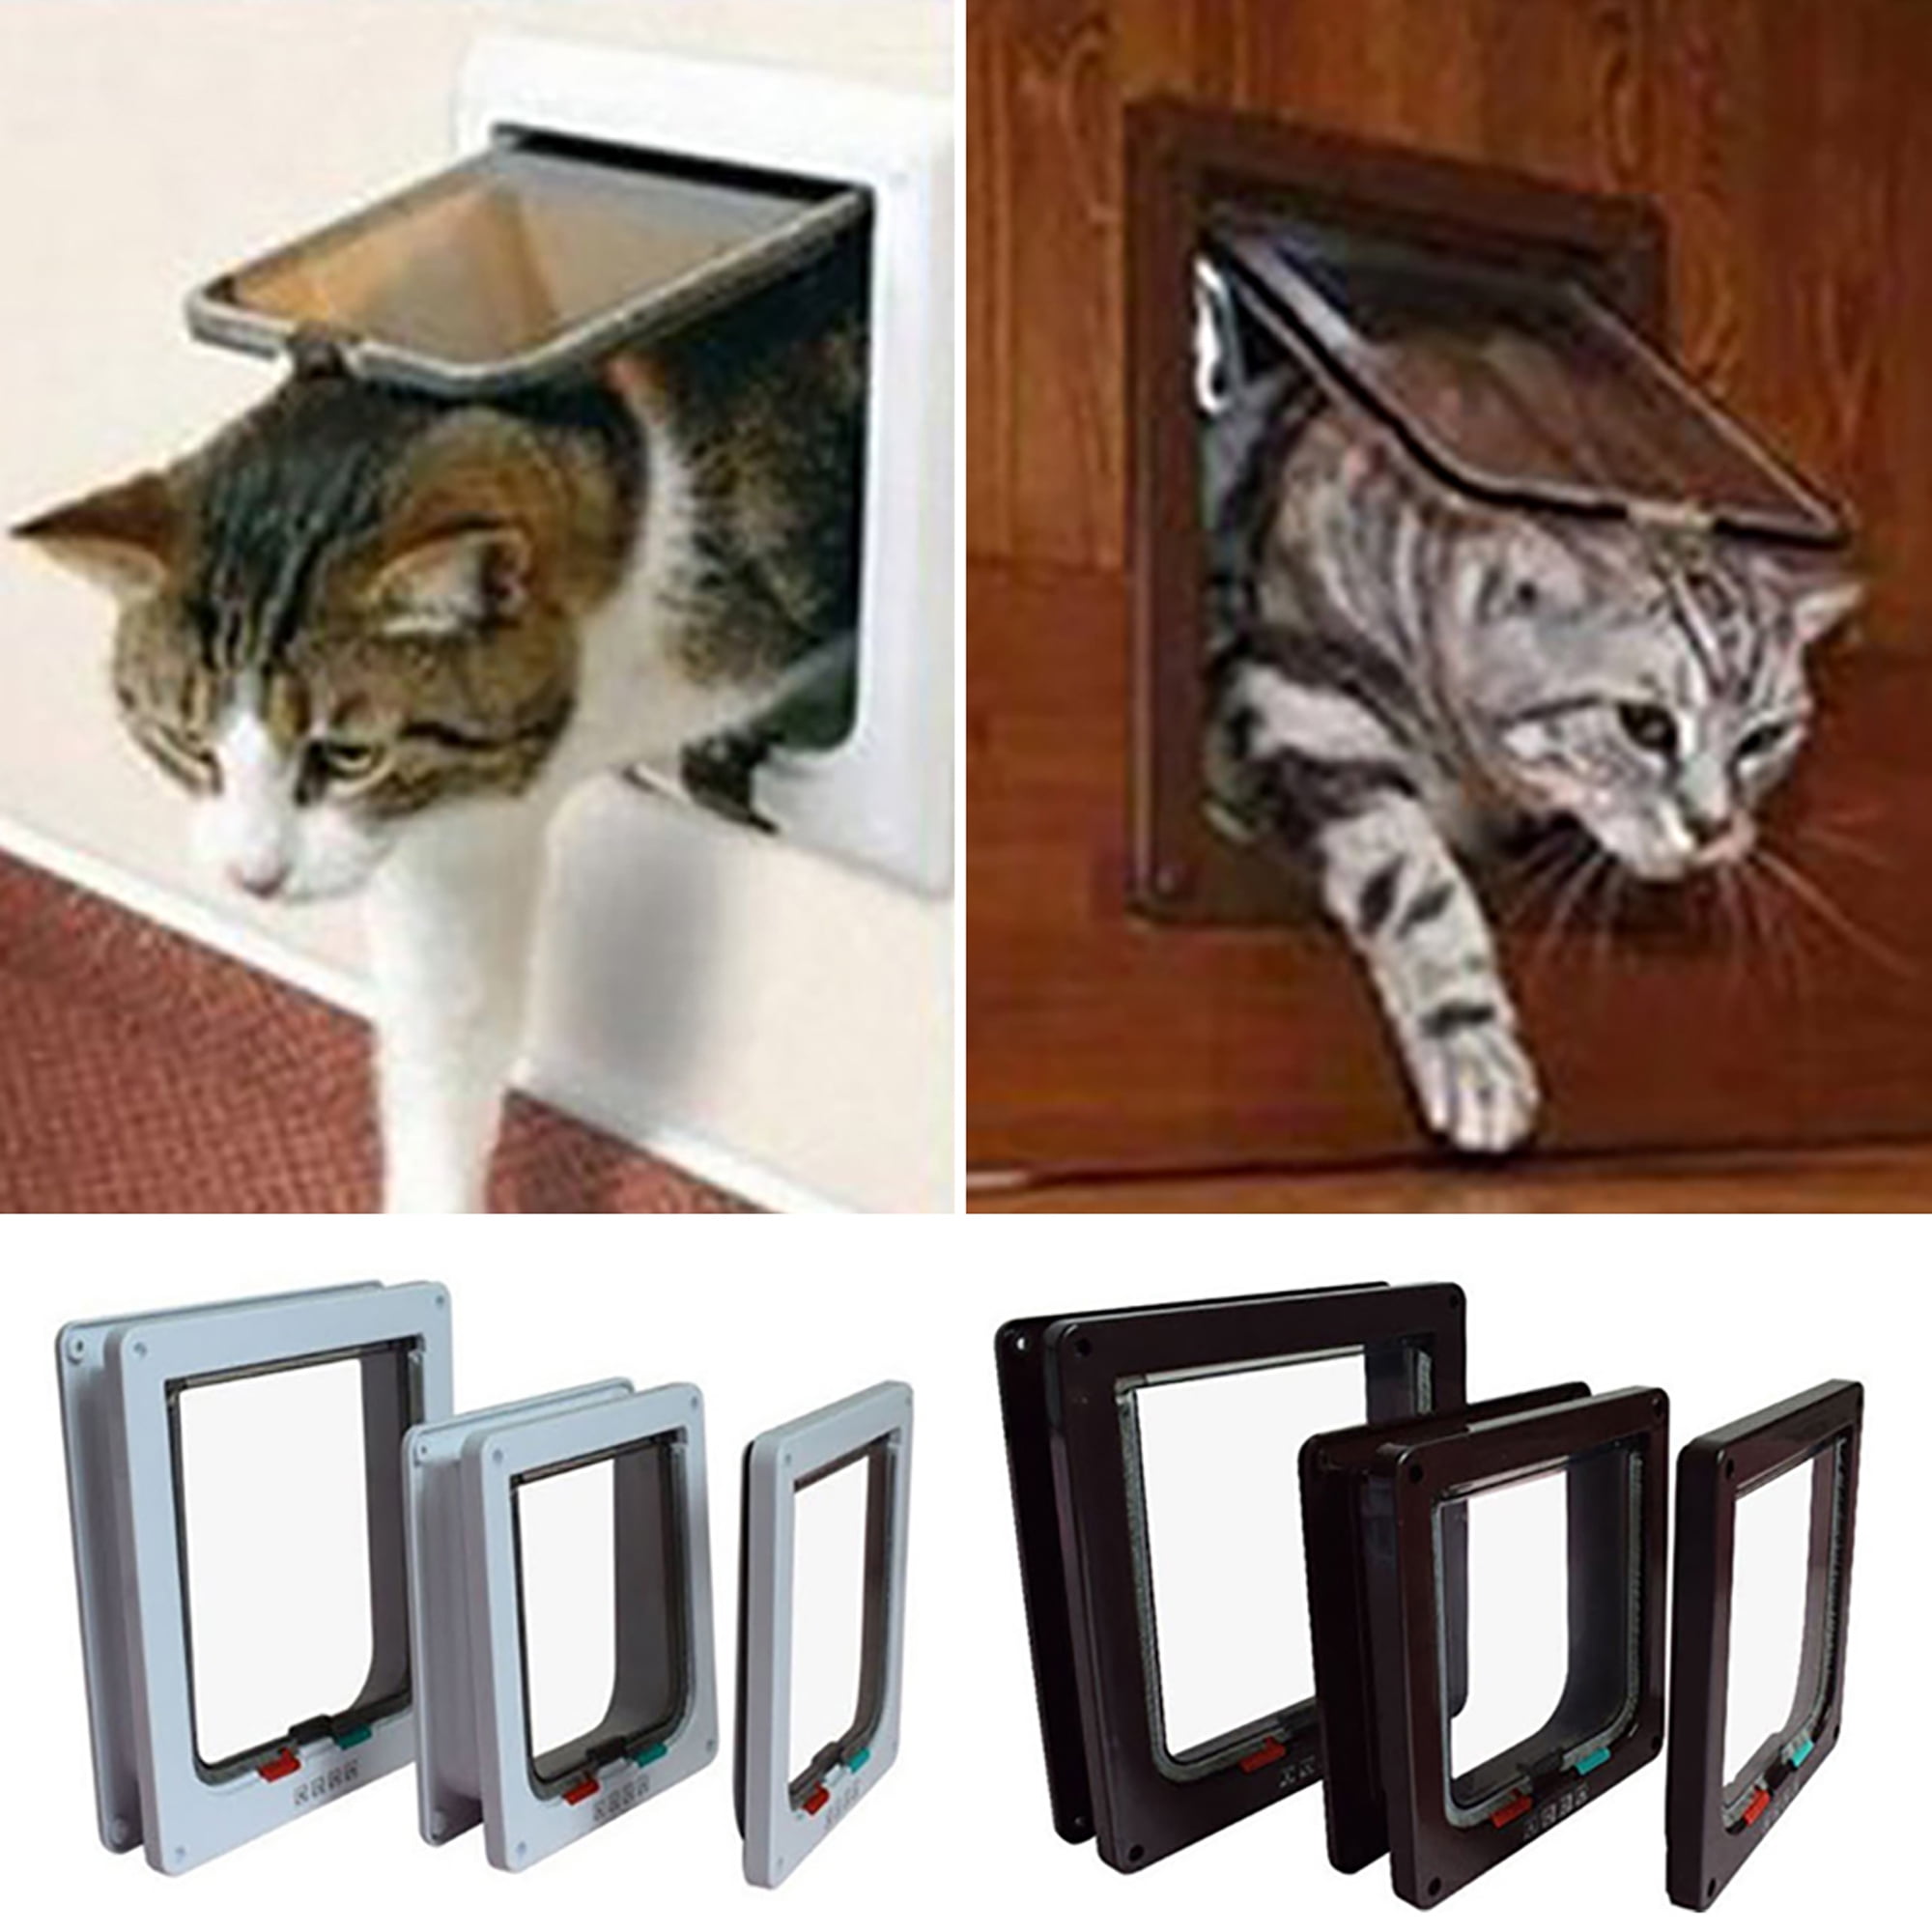 2 Way Pets Cat Dog Magnetic Lock Lockable Safe Flap Door Gate Frame Black